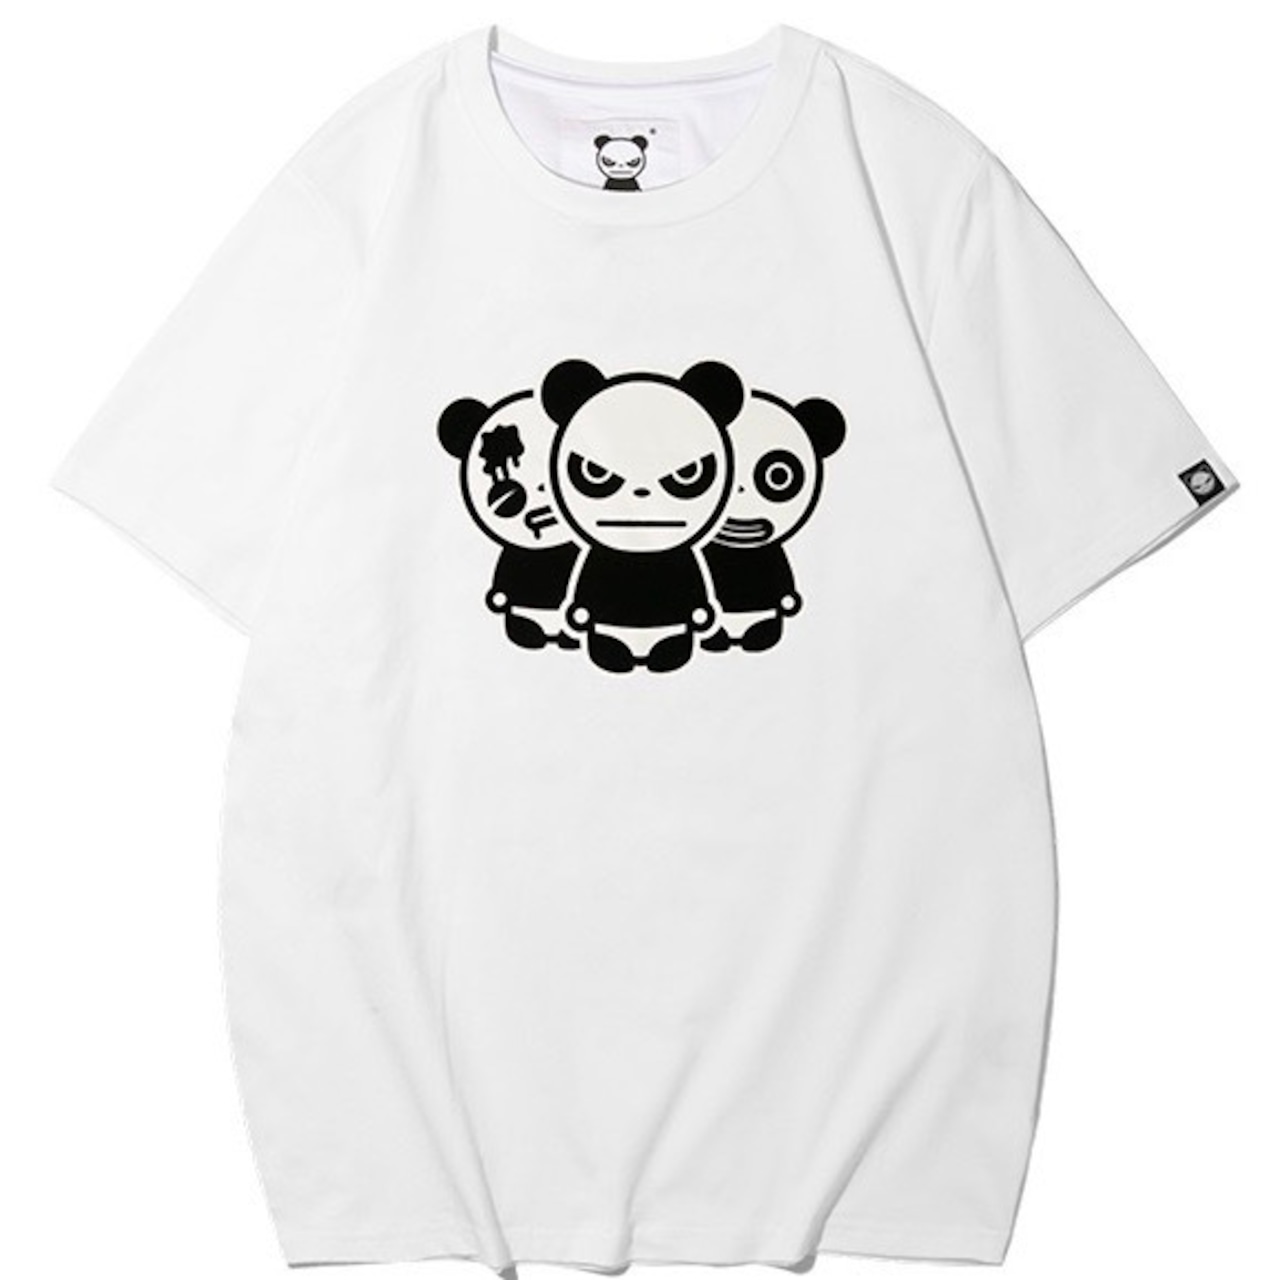 送料無料 【HIPANDA ハイパンダ】レディース 3パンダ プリント Tシャツ WOMEN'S TRIO LOGO SHORT SLEEVED T-SHIRT / WHITE・BLACK